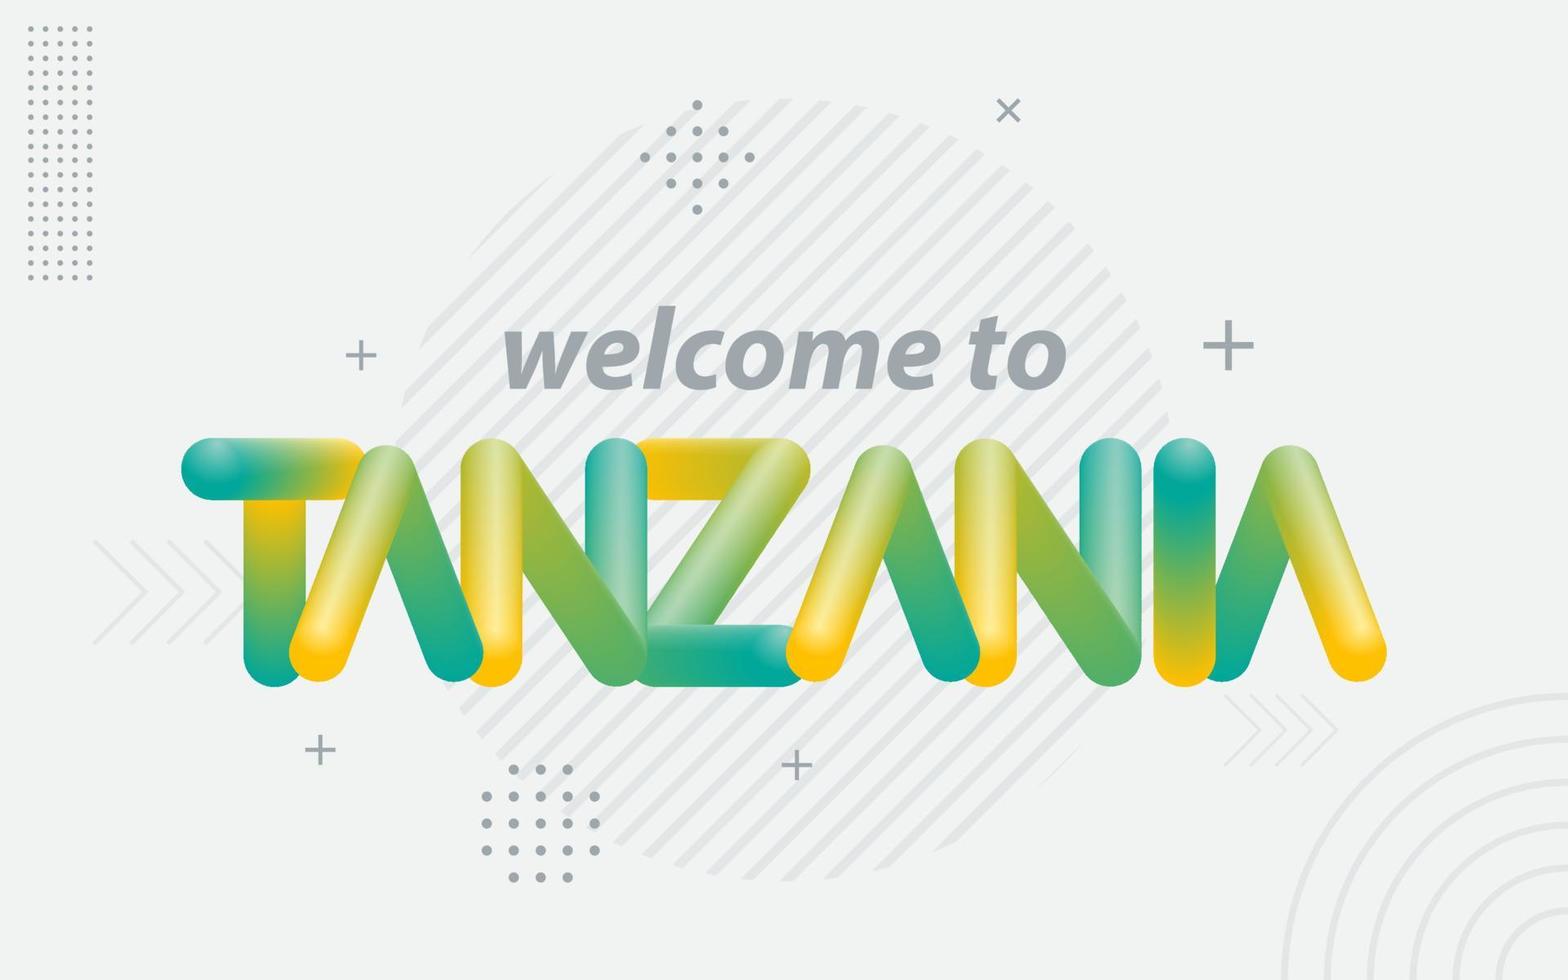 bienvenido a tanzania. tipografía creativa con efecto de mezcla 3d vector